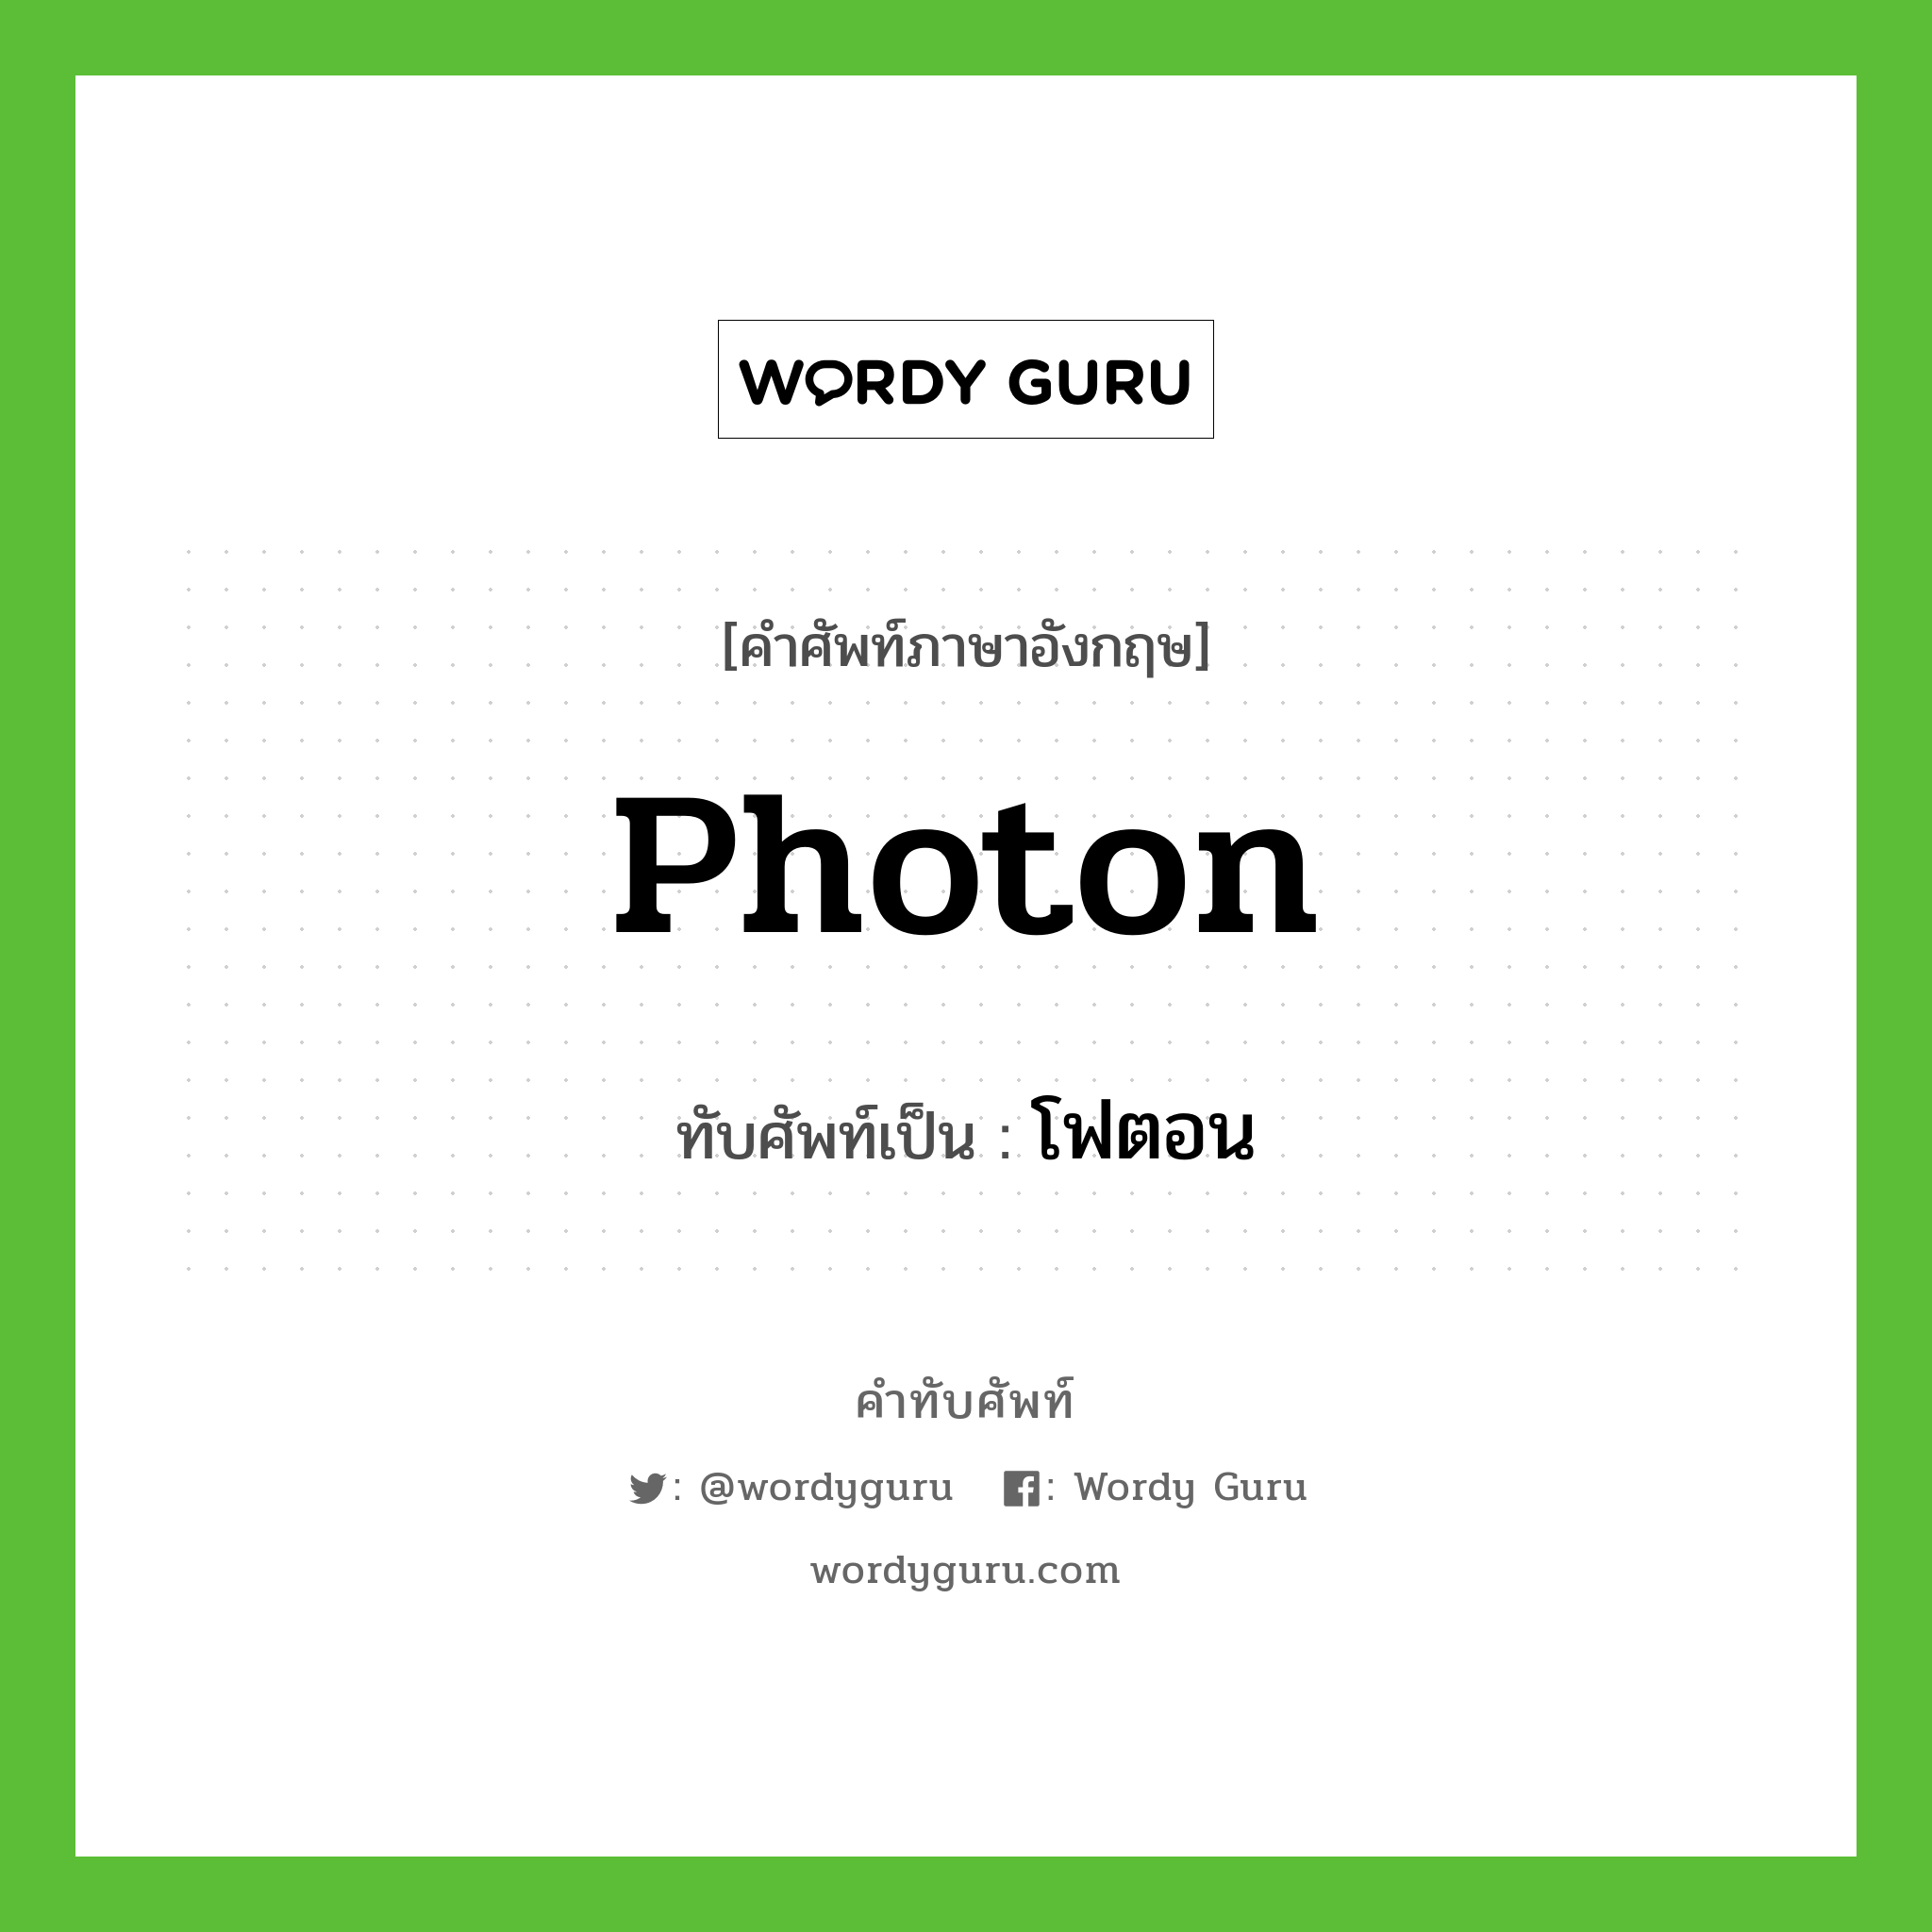 photon เขียนเป็นคำไทยว่าอะไร?, คำศัพท์ภาษาอังกฤษ photon ทับศัพท์เป็น โฟตอน